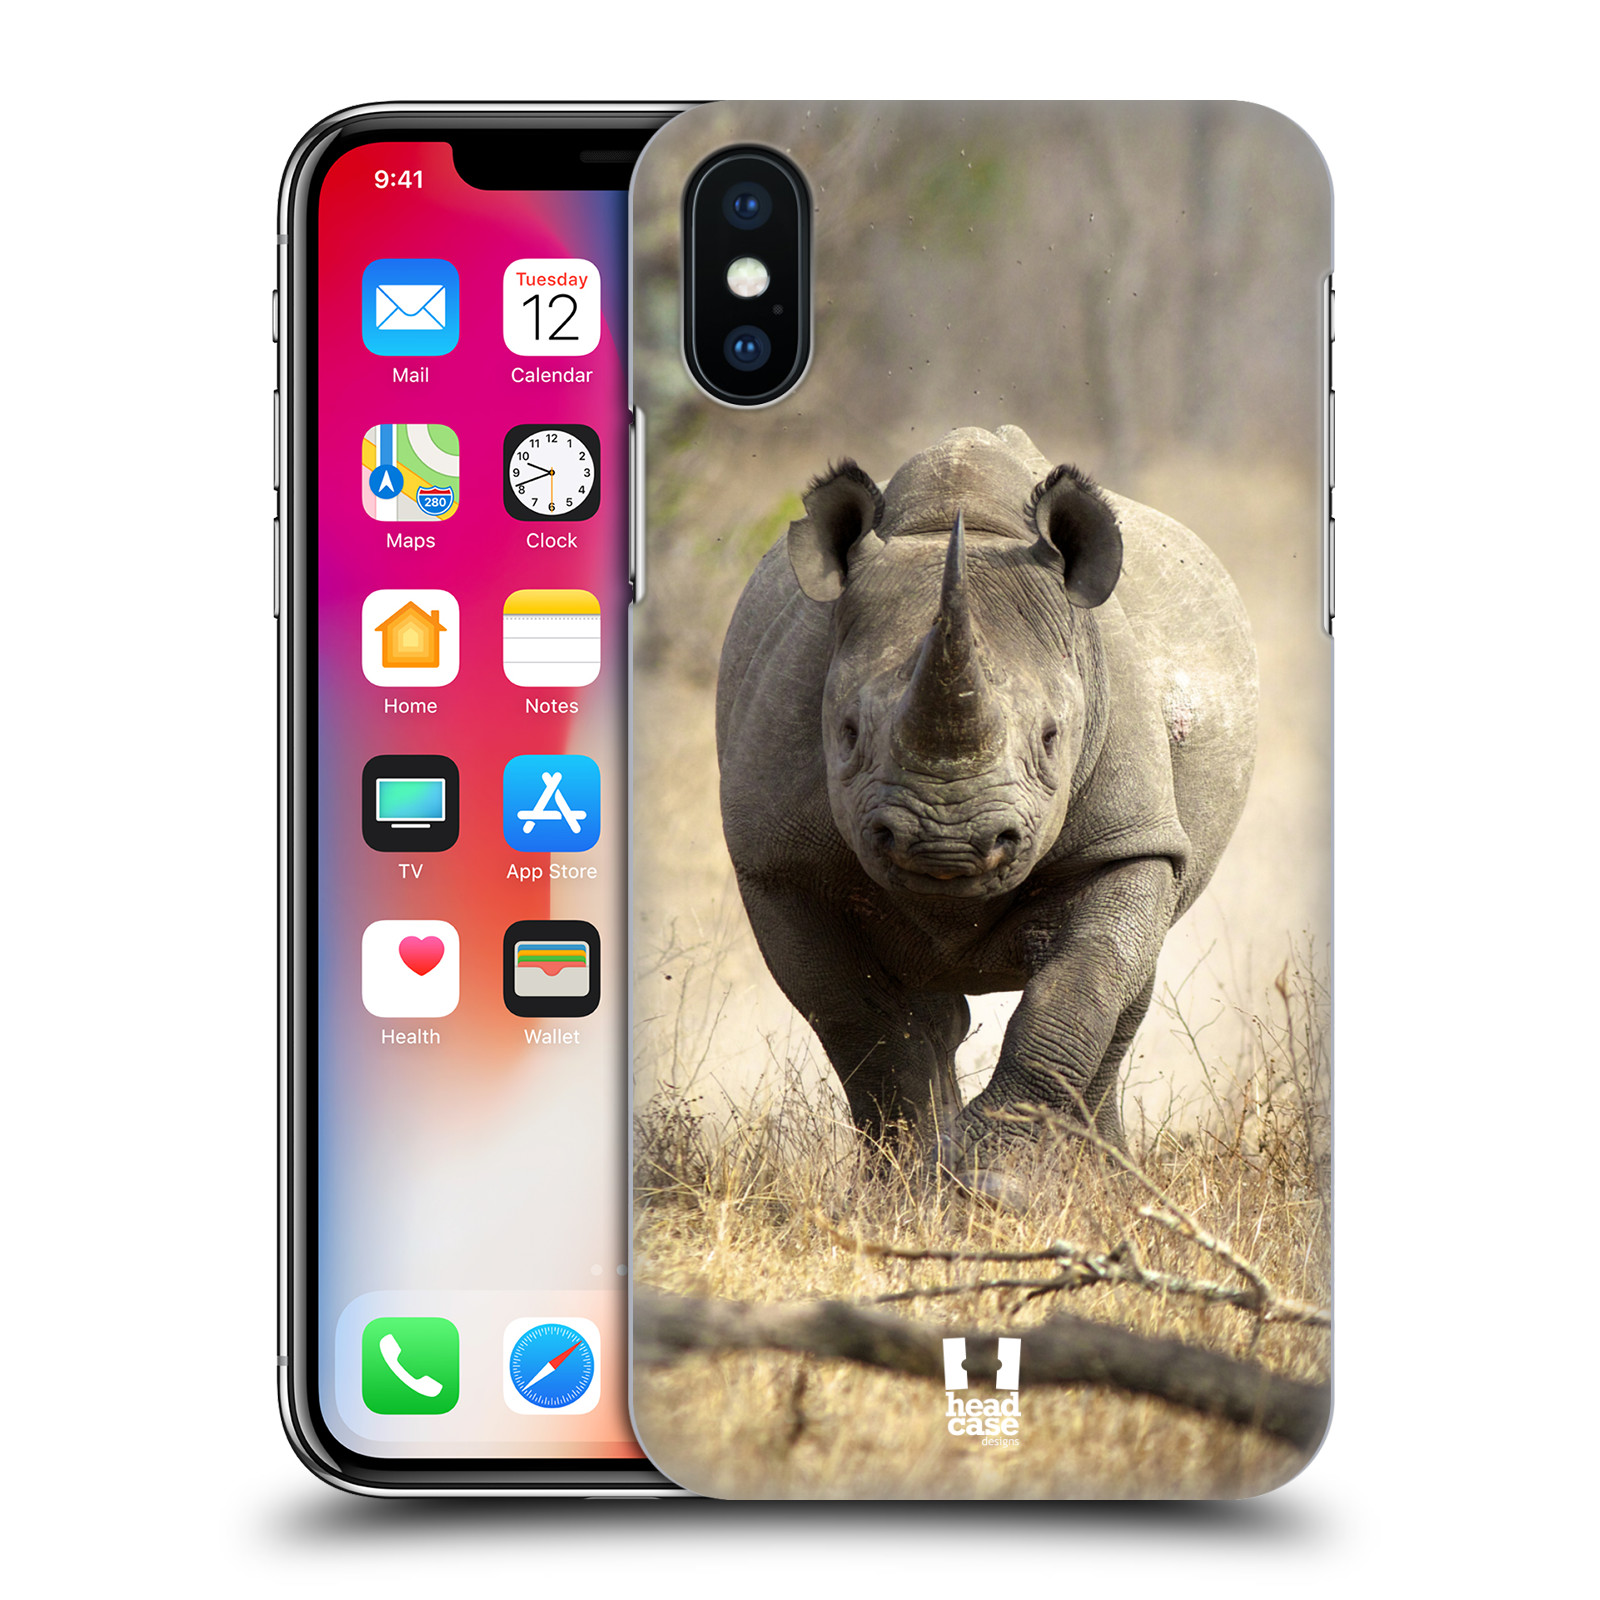 HEAD CASE plastový obal na mobil Apple Iphone X / XS vzor Divočina, Divoký život a zvířata foto AFRIKA BĚŽÍCÍ NOSOROŽEC